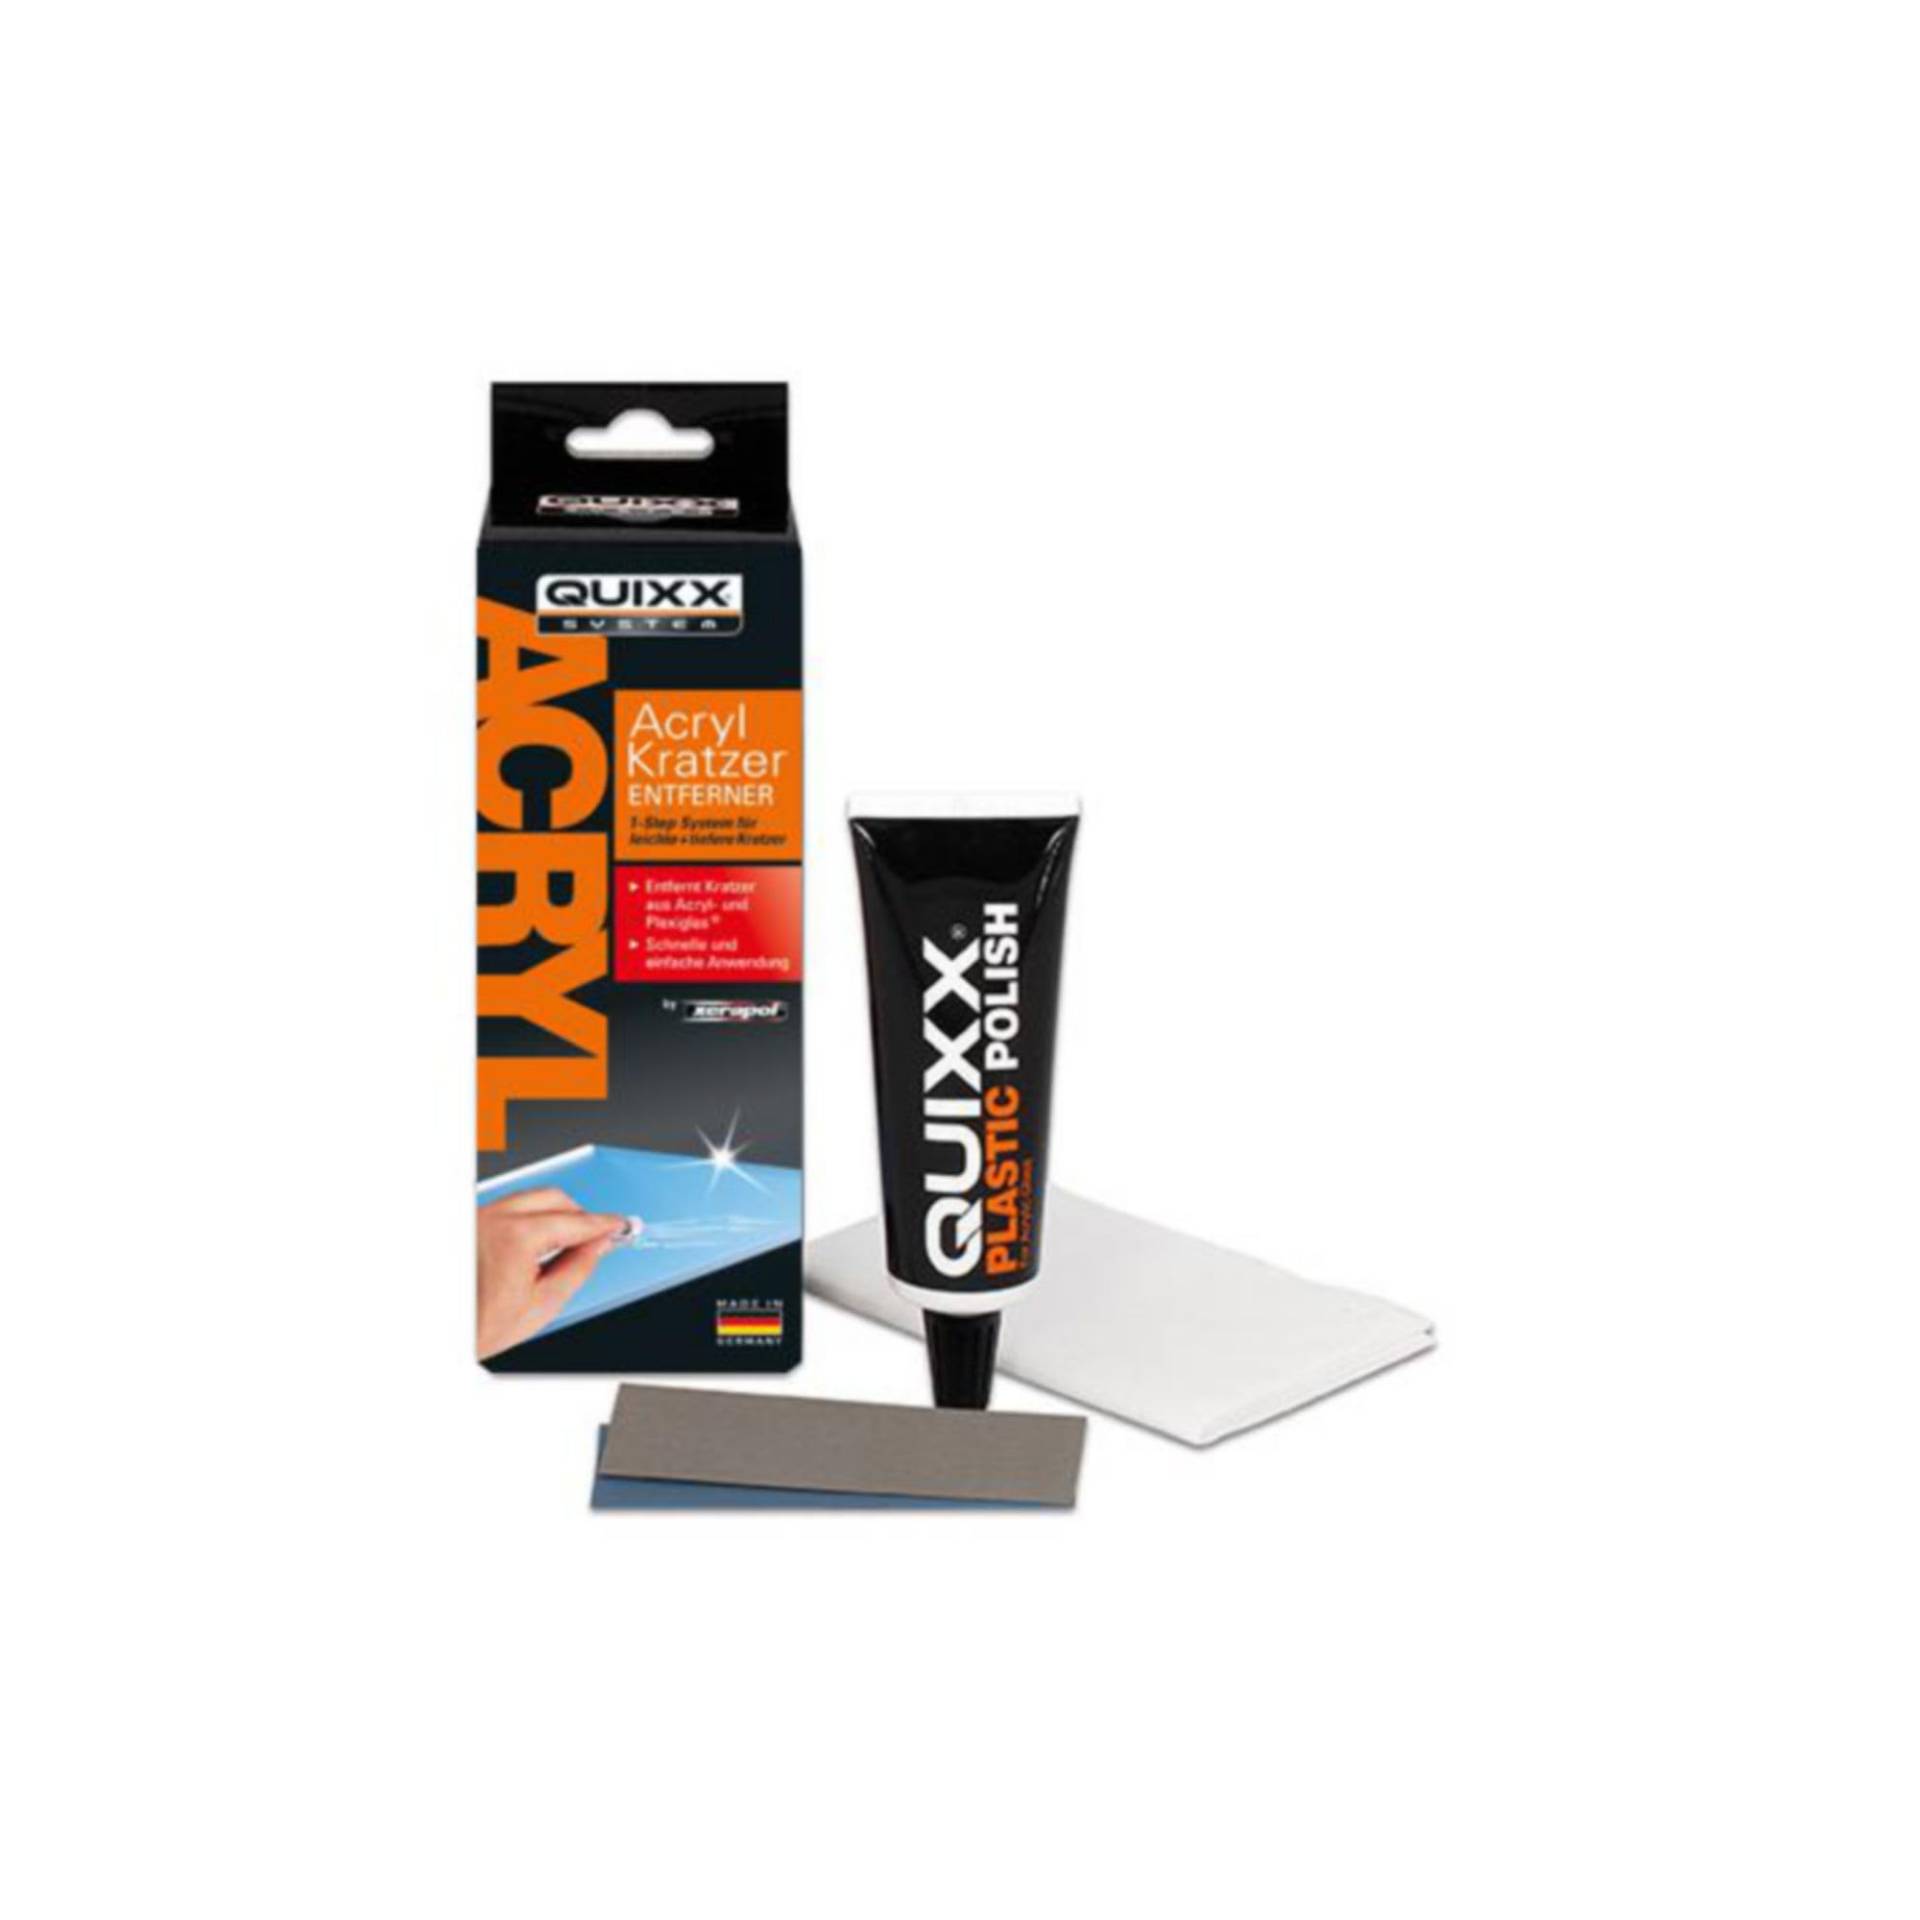 QUIXX Acryl Kratzer Entferner zur Reparatur von Kratzern auf Acryl- und Plexiglas-Oberflächen, 50g von Quixx